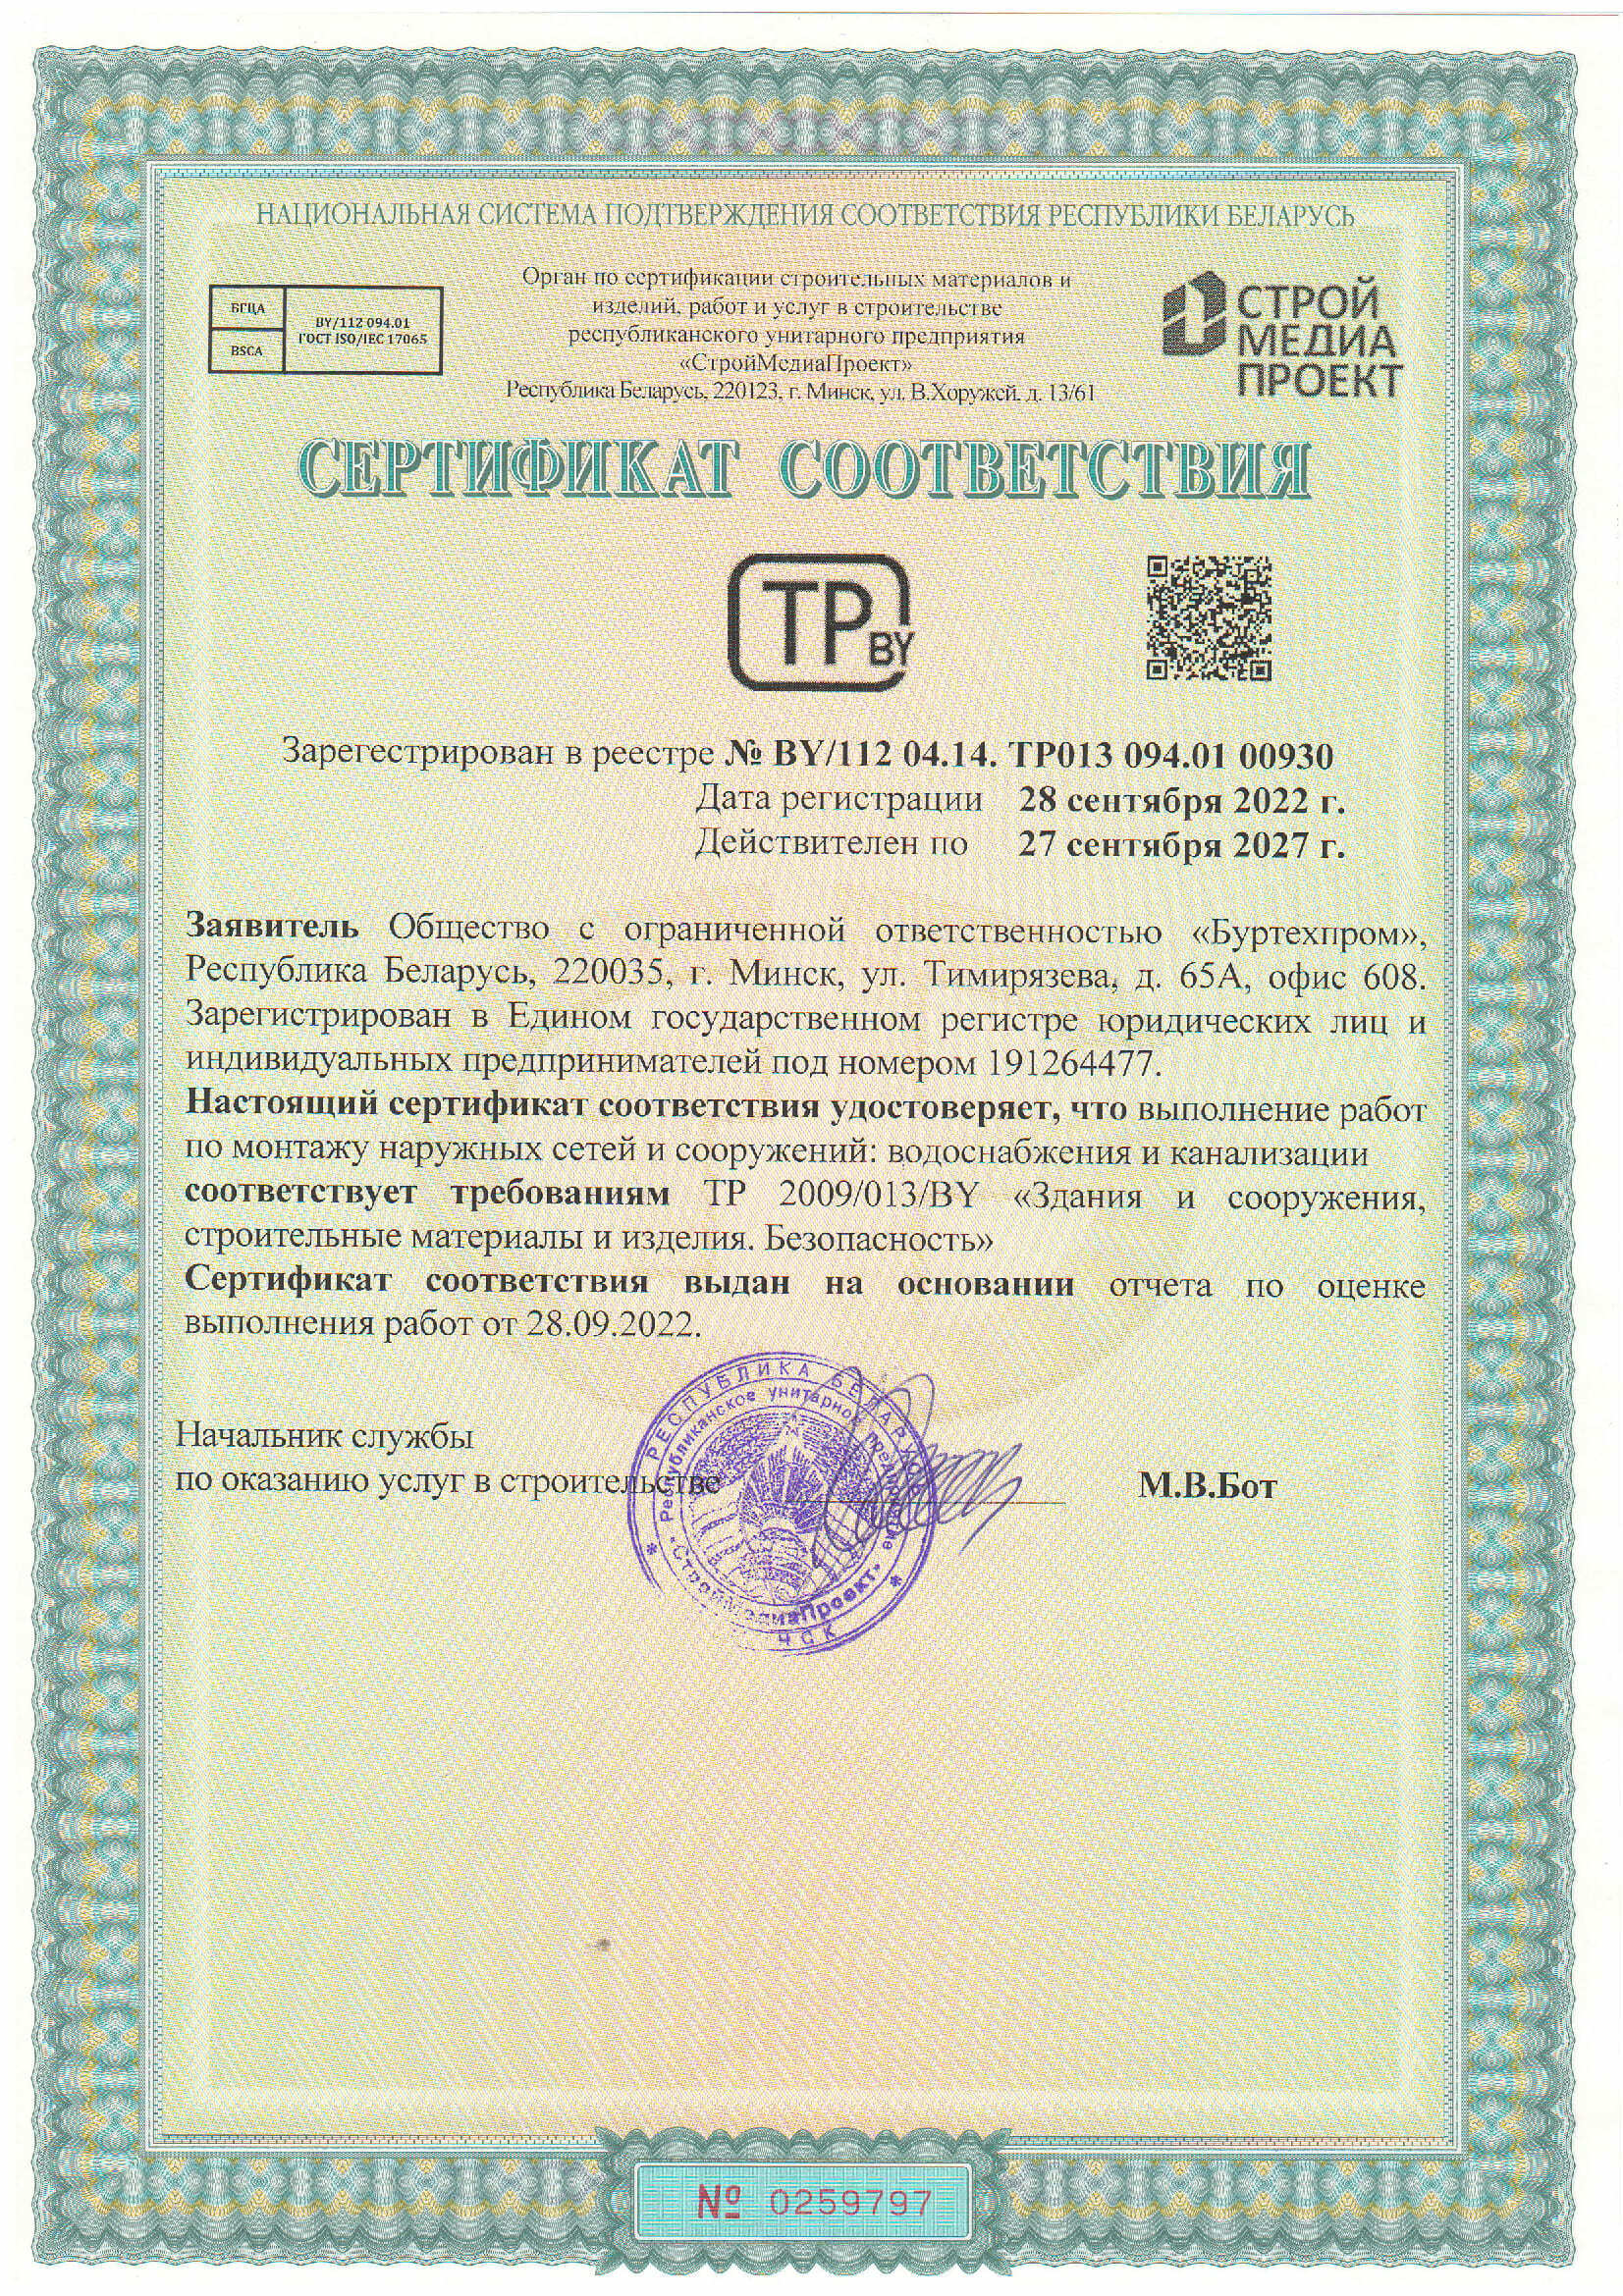 Сертификат соответствия требованиям ТР 2009/013/BY Здания, сооружения, строительные материалы и изделия. Безопасность